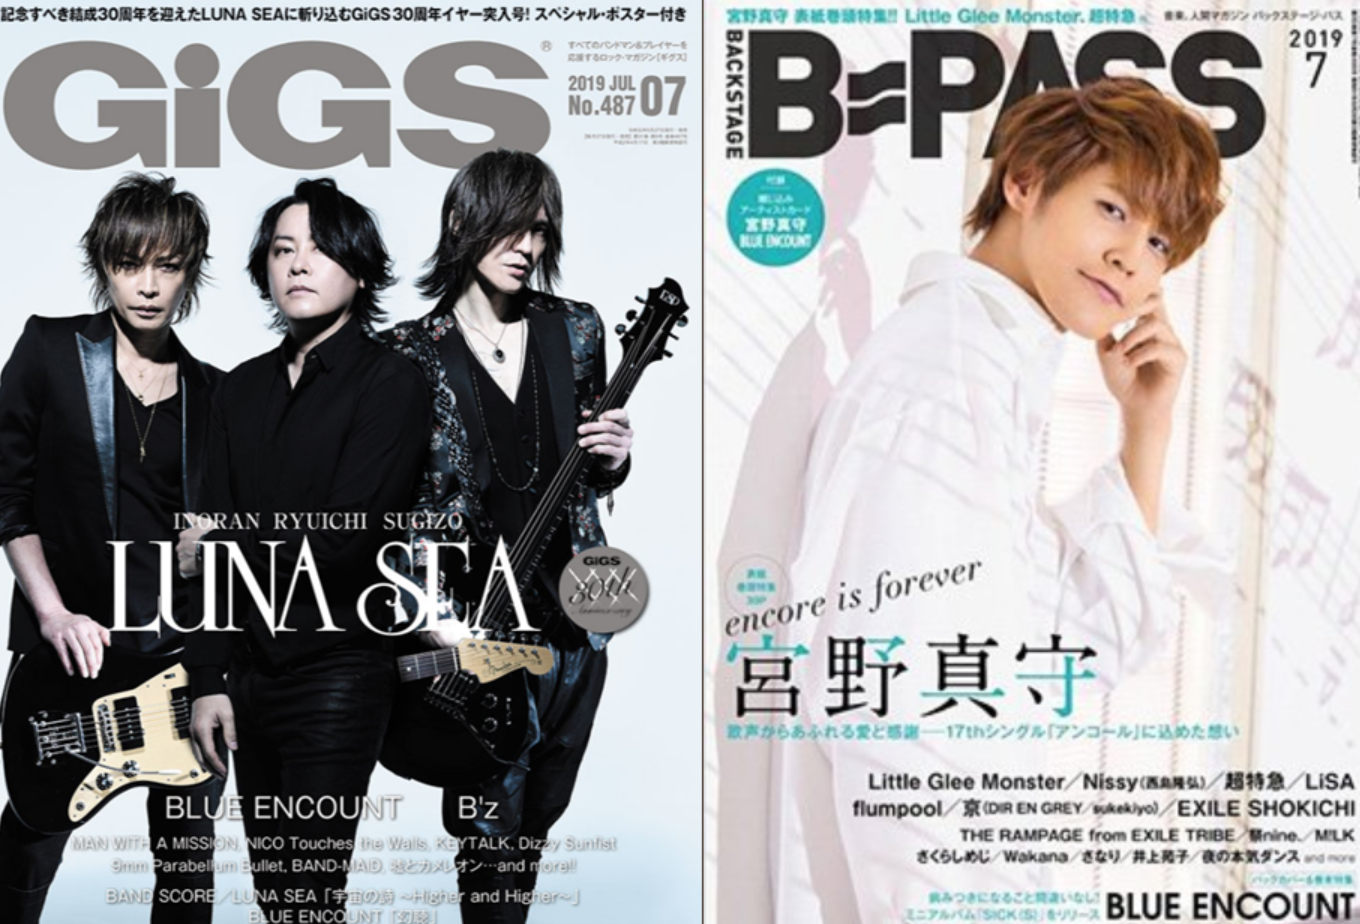 【雑誌】GIGS 7月号、B-PASS7月号の入荷のお知らせ